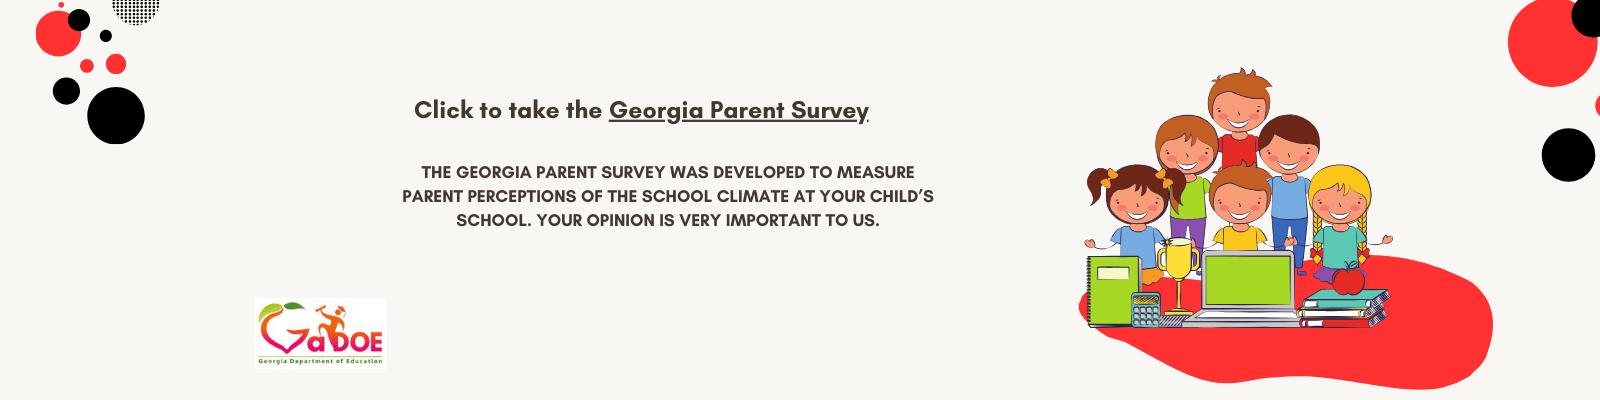 GA_Parent_Survey